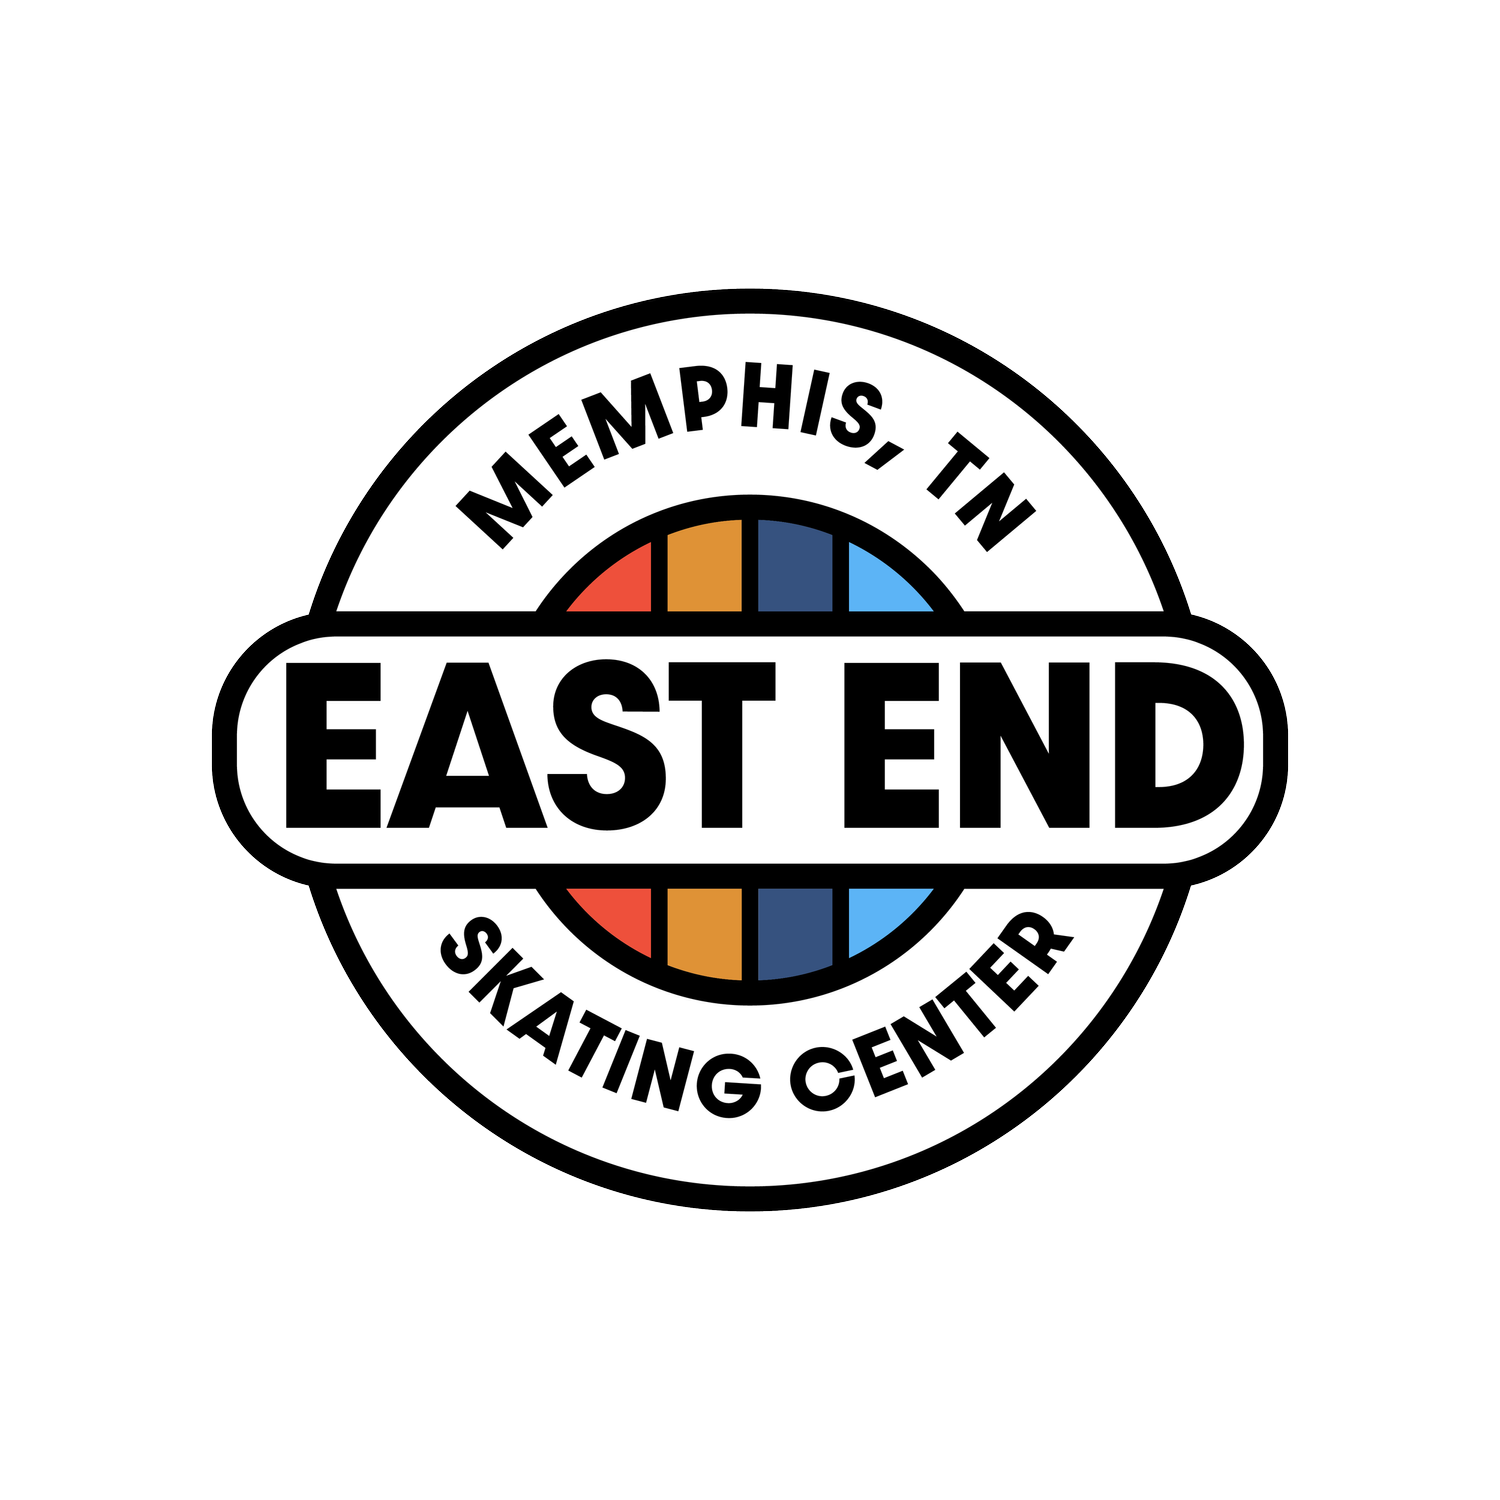 East End Skating Center